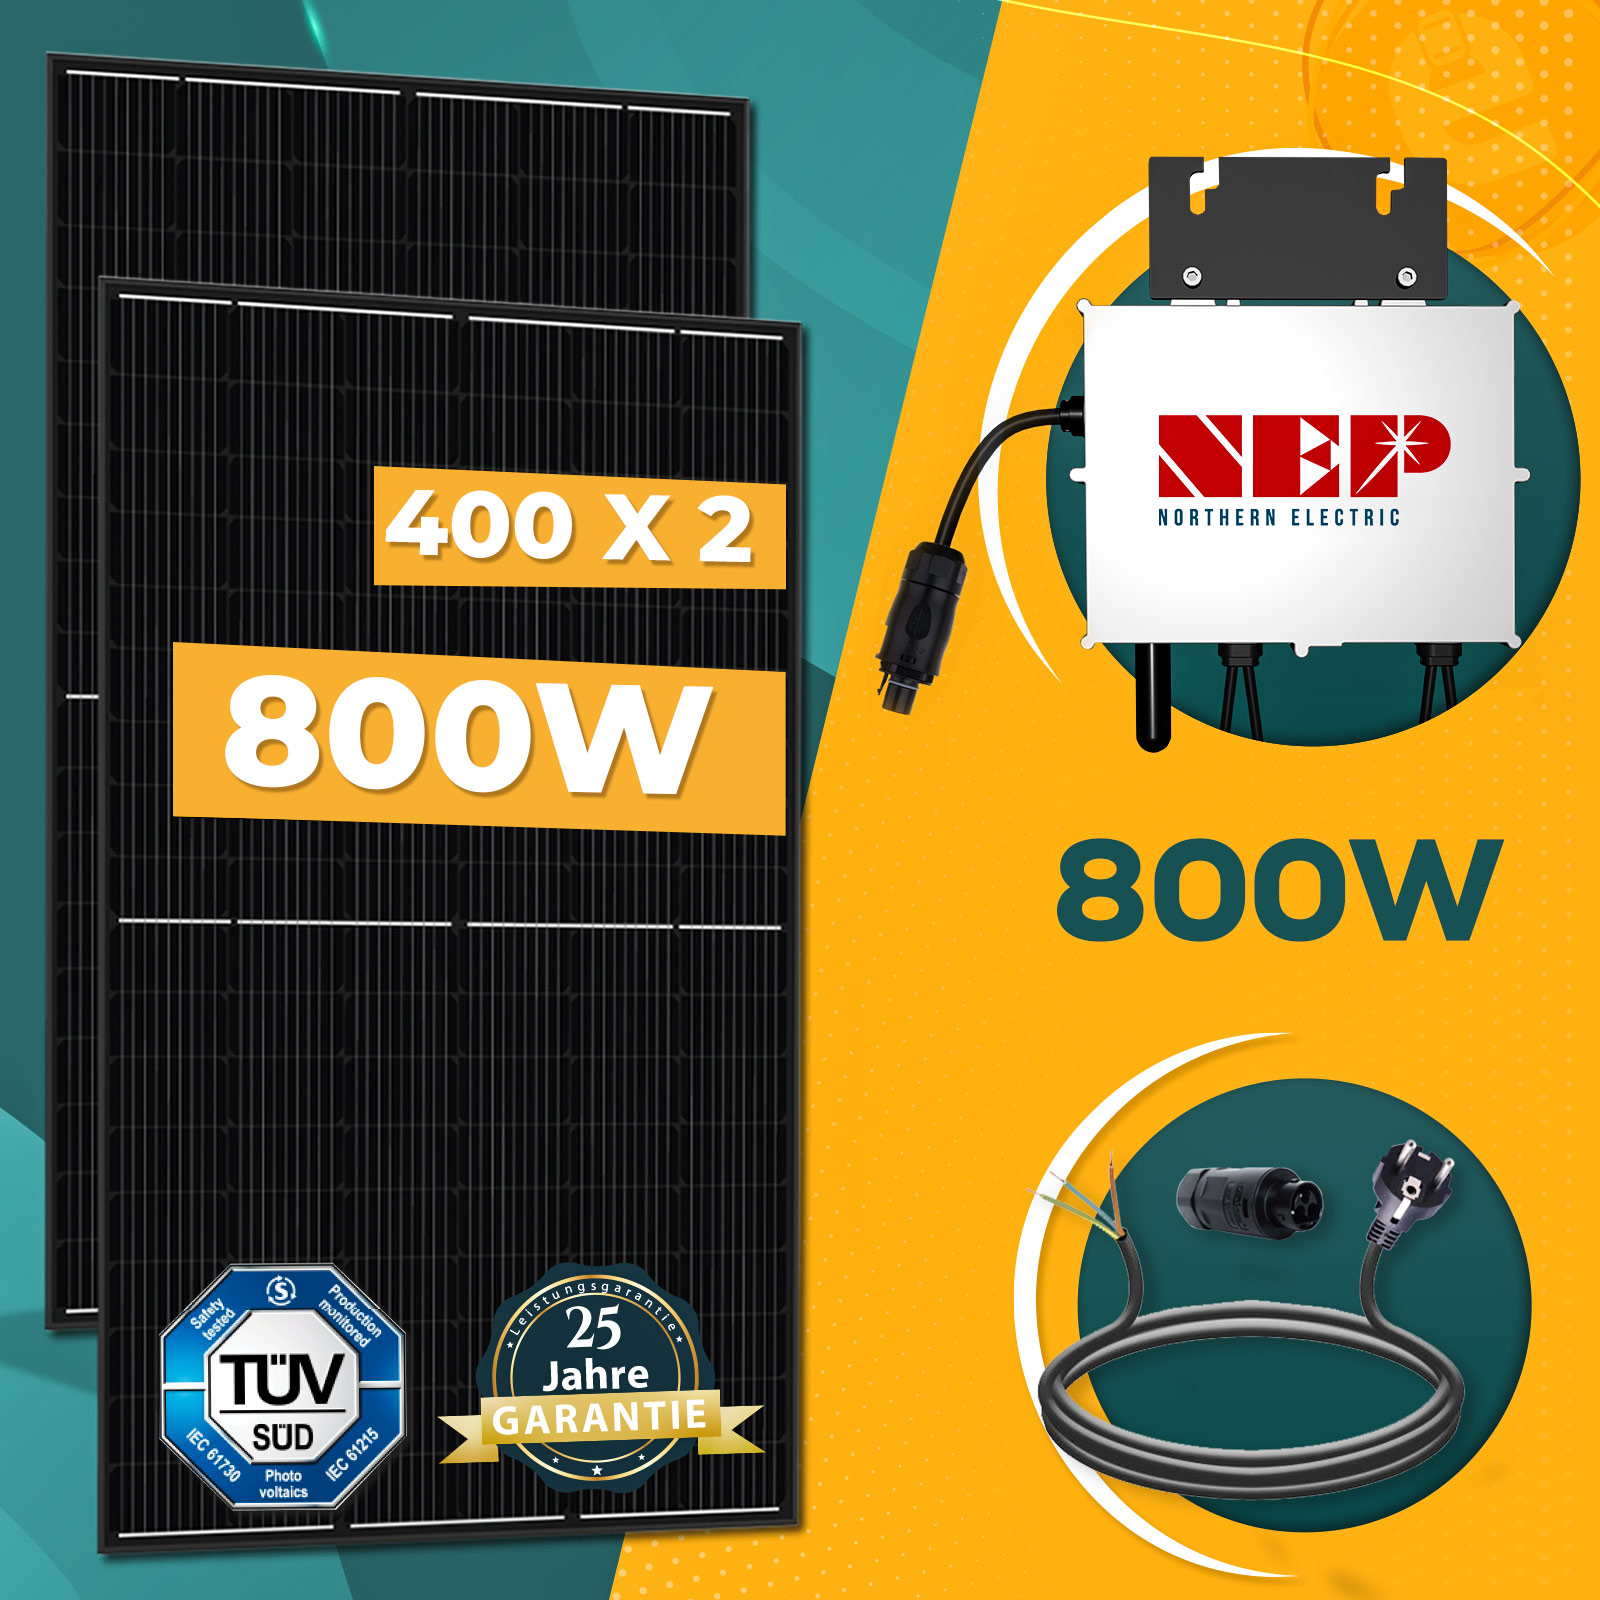 800W Balkonkraftwerk Komplettset inkl. 400W Solarmodule, NEP 800W